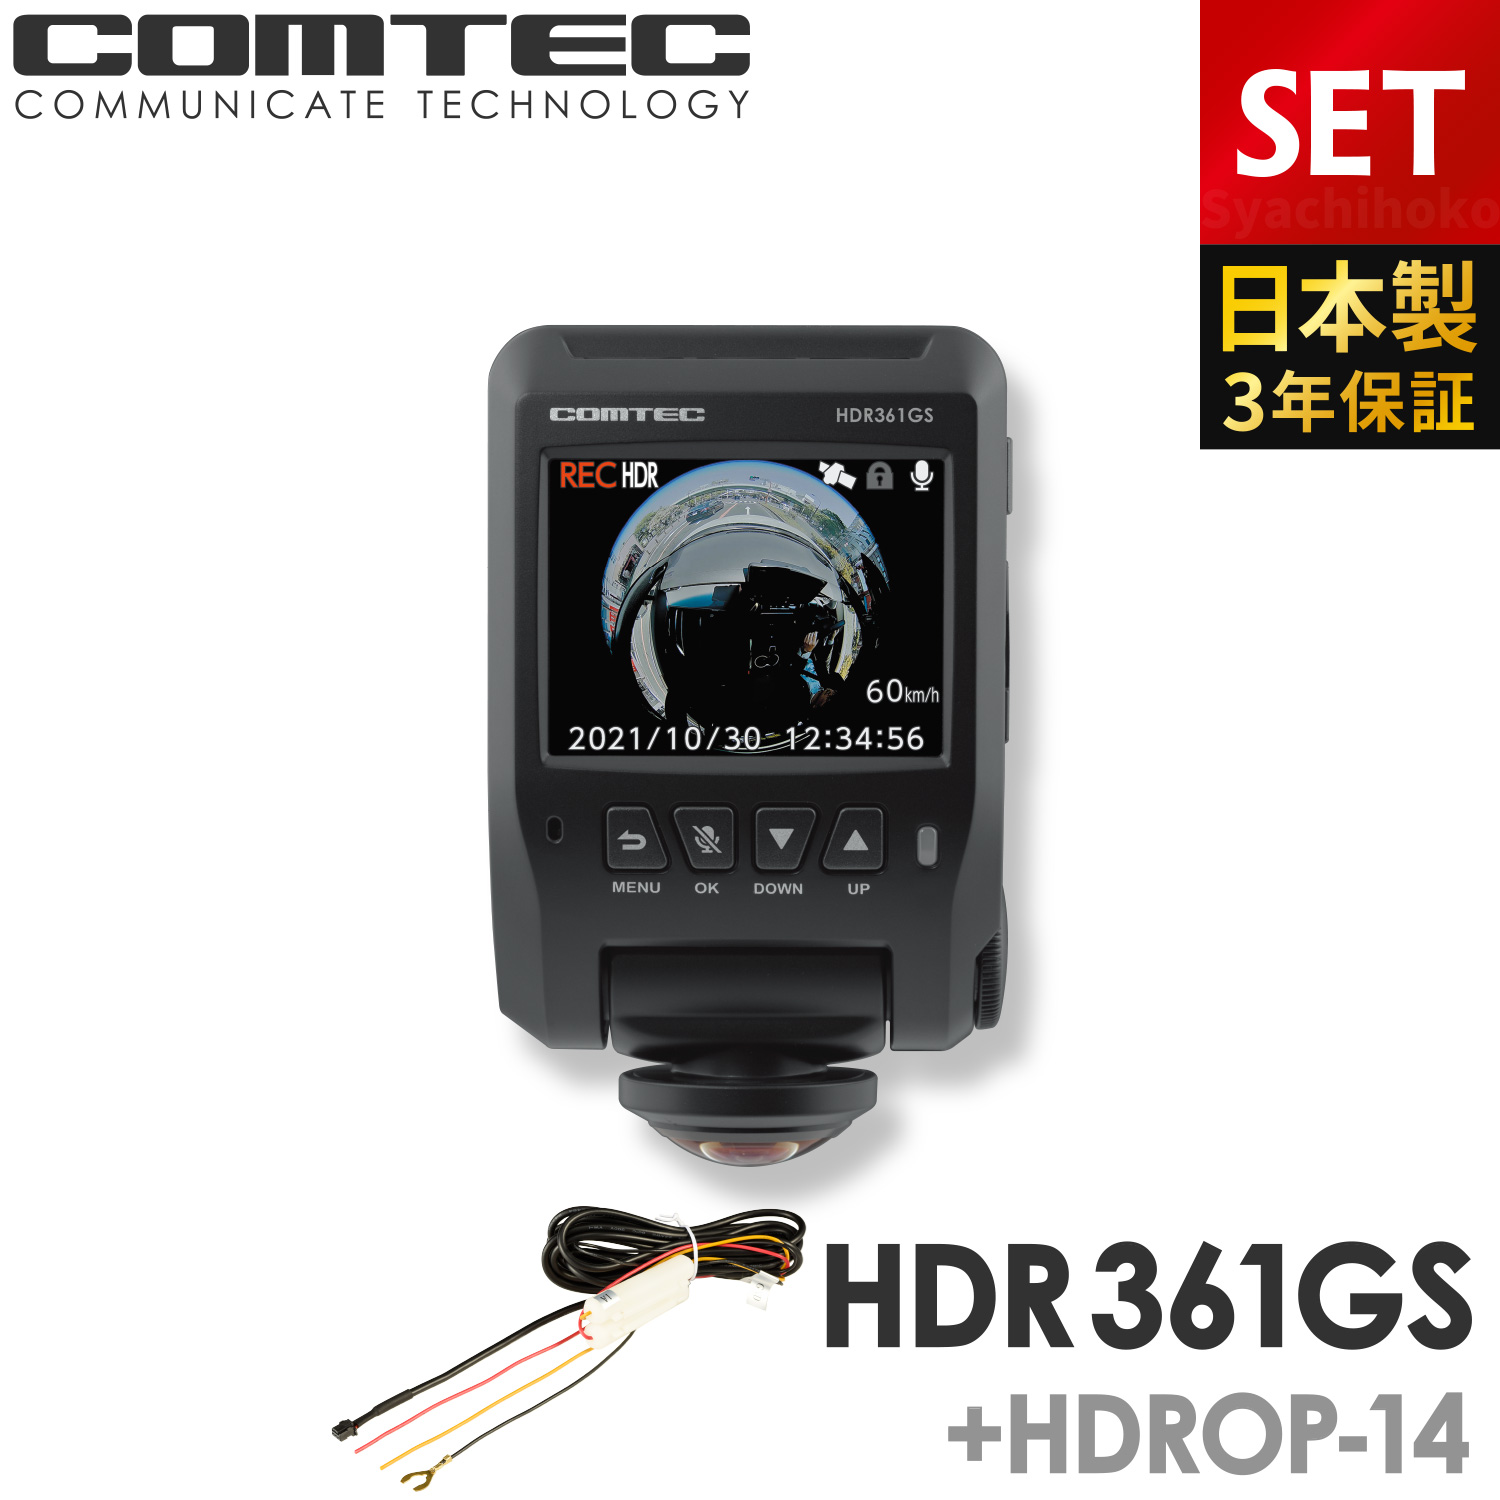 ドライブレコーダー 360度 コムテック HDR361GS+HDROP-14 駐車監視コードセット 前後左右 日本製 3年保証 常時 衝撃録画 GPS搭載 駐車監視対応 2.4インチ液晶